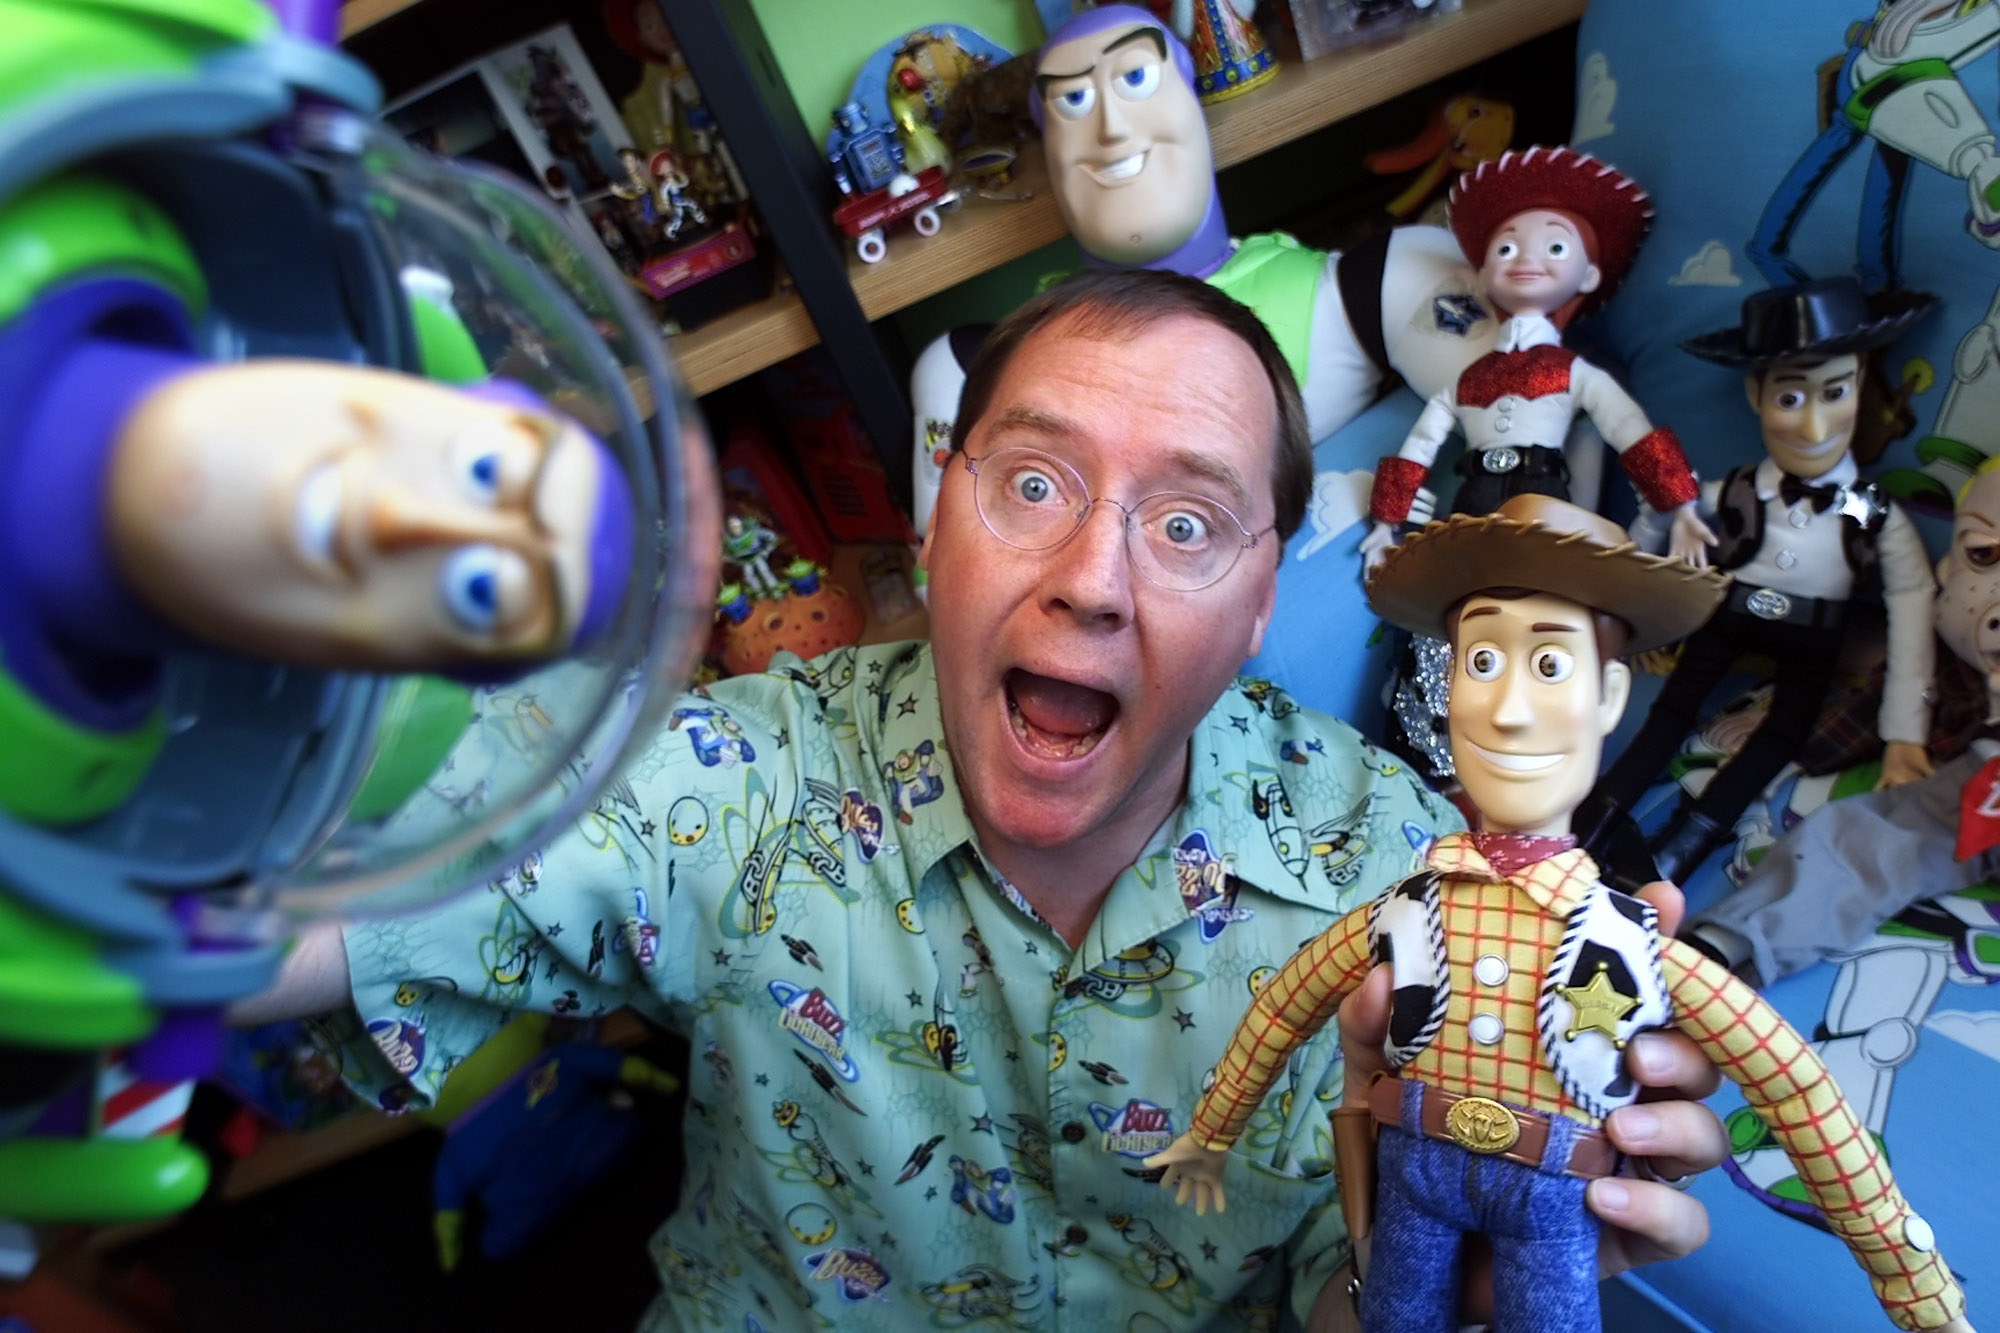   John Lasseter - Pixar co-founder  